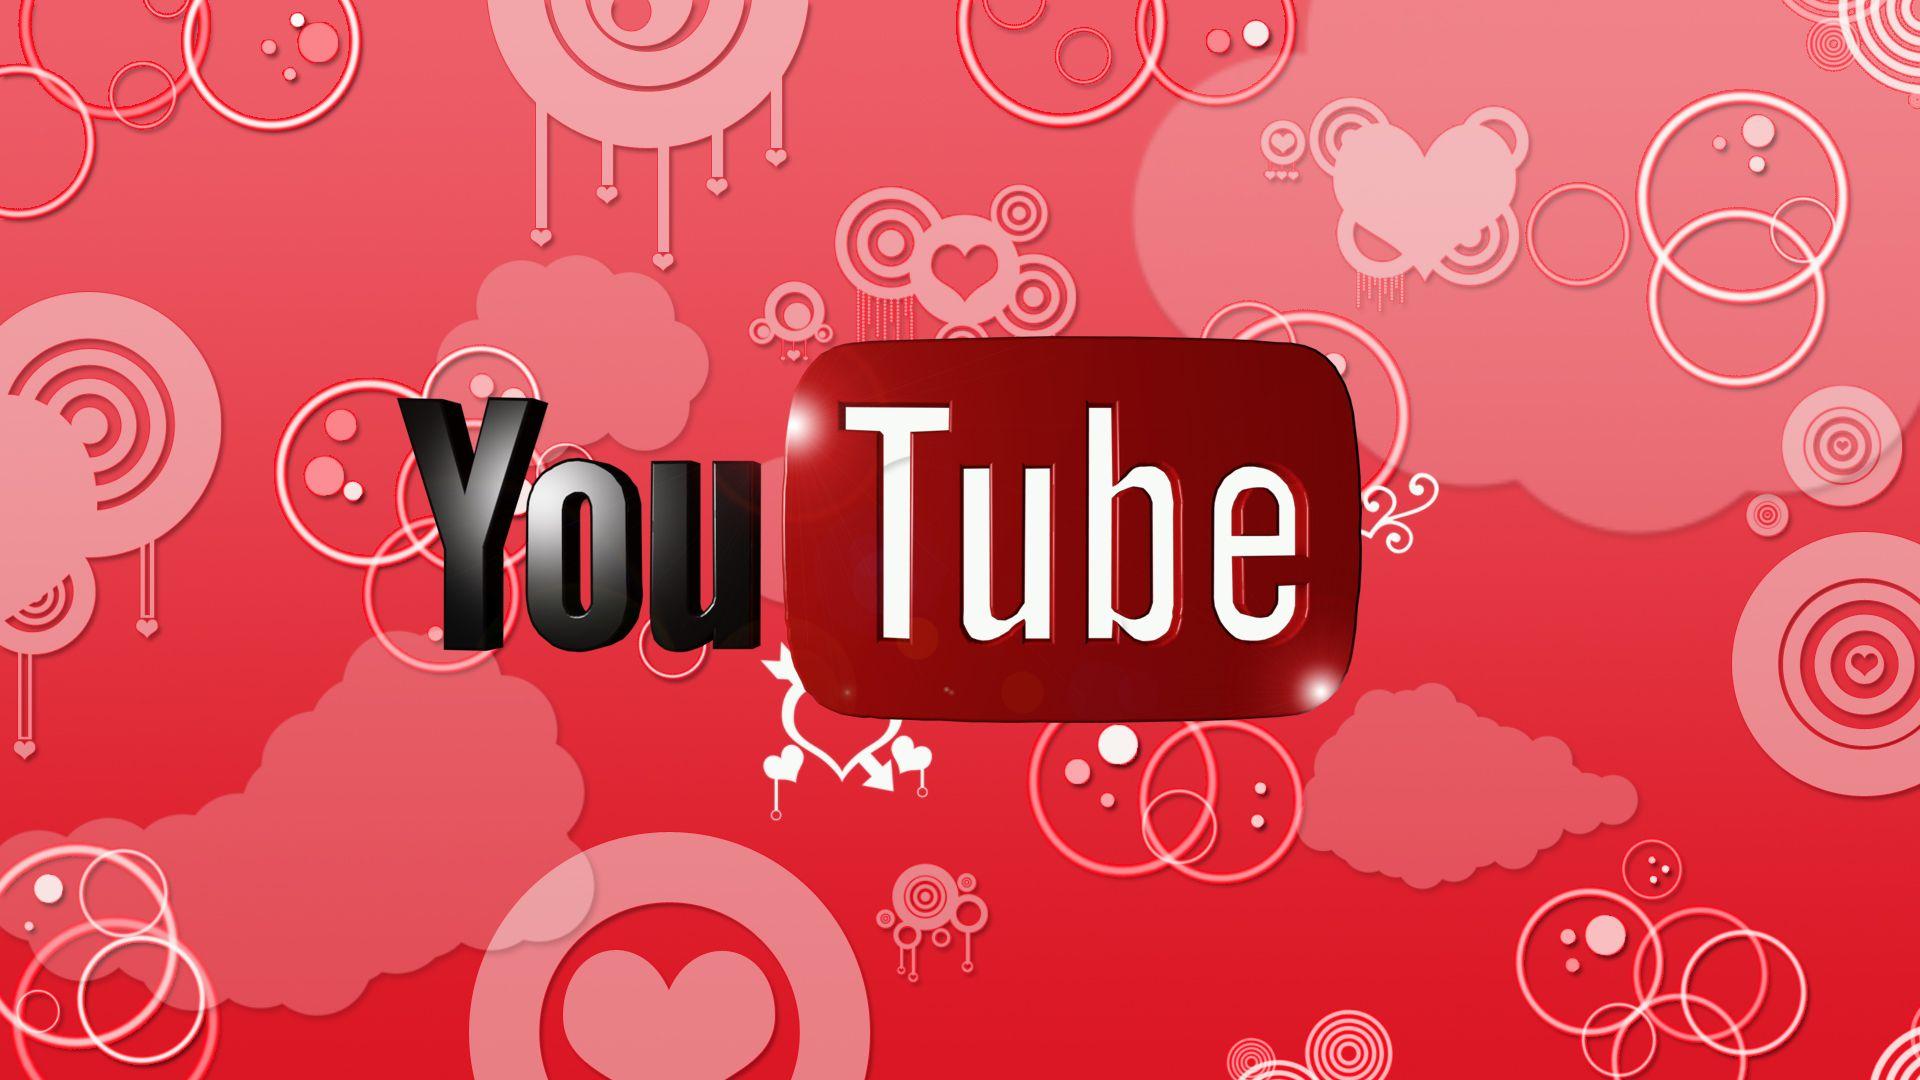 Youtube Logo Wallpaper